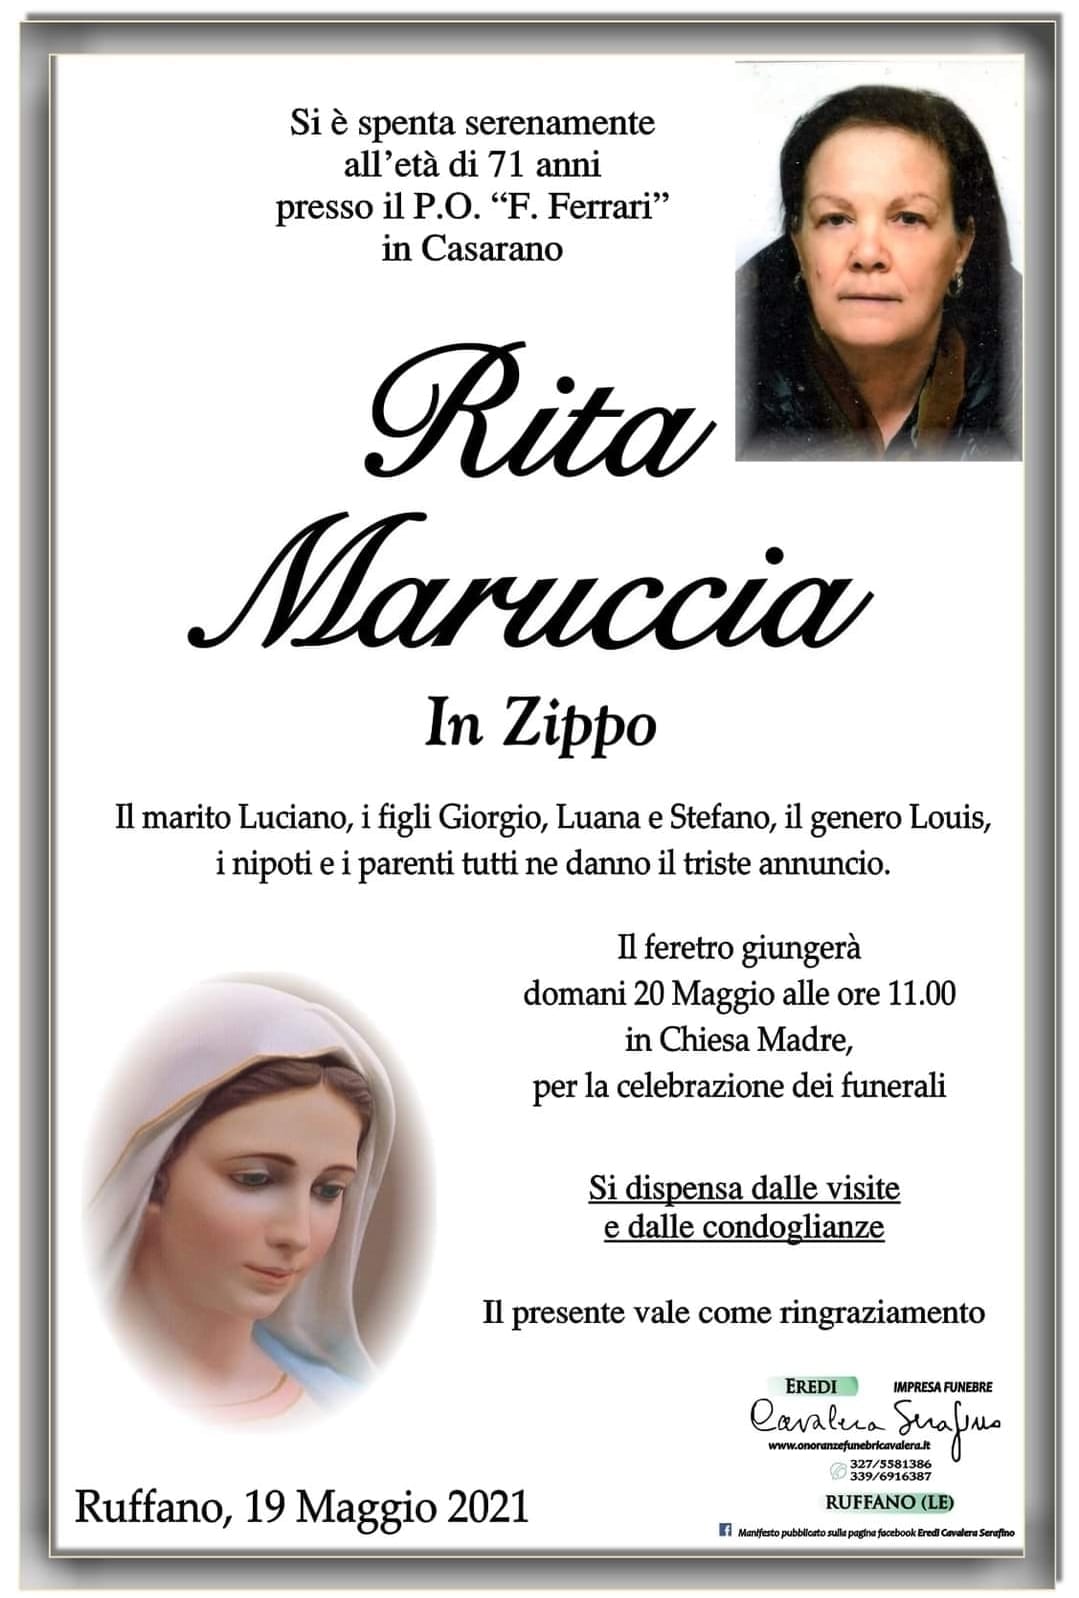 Rita Maruccia